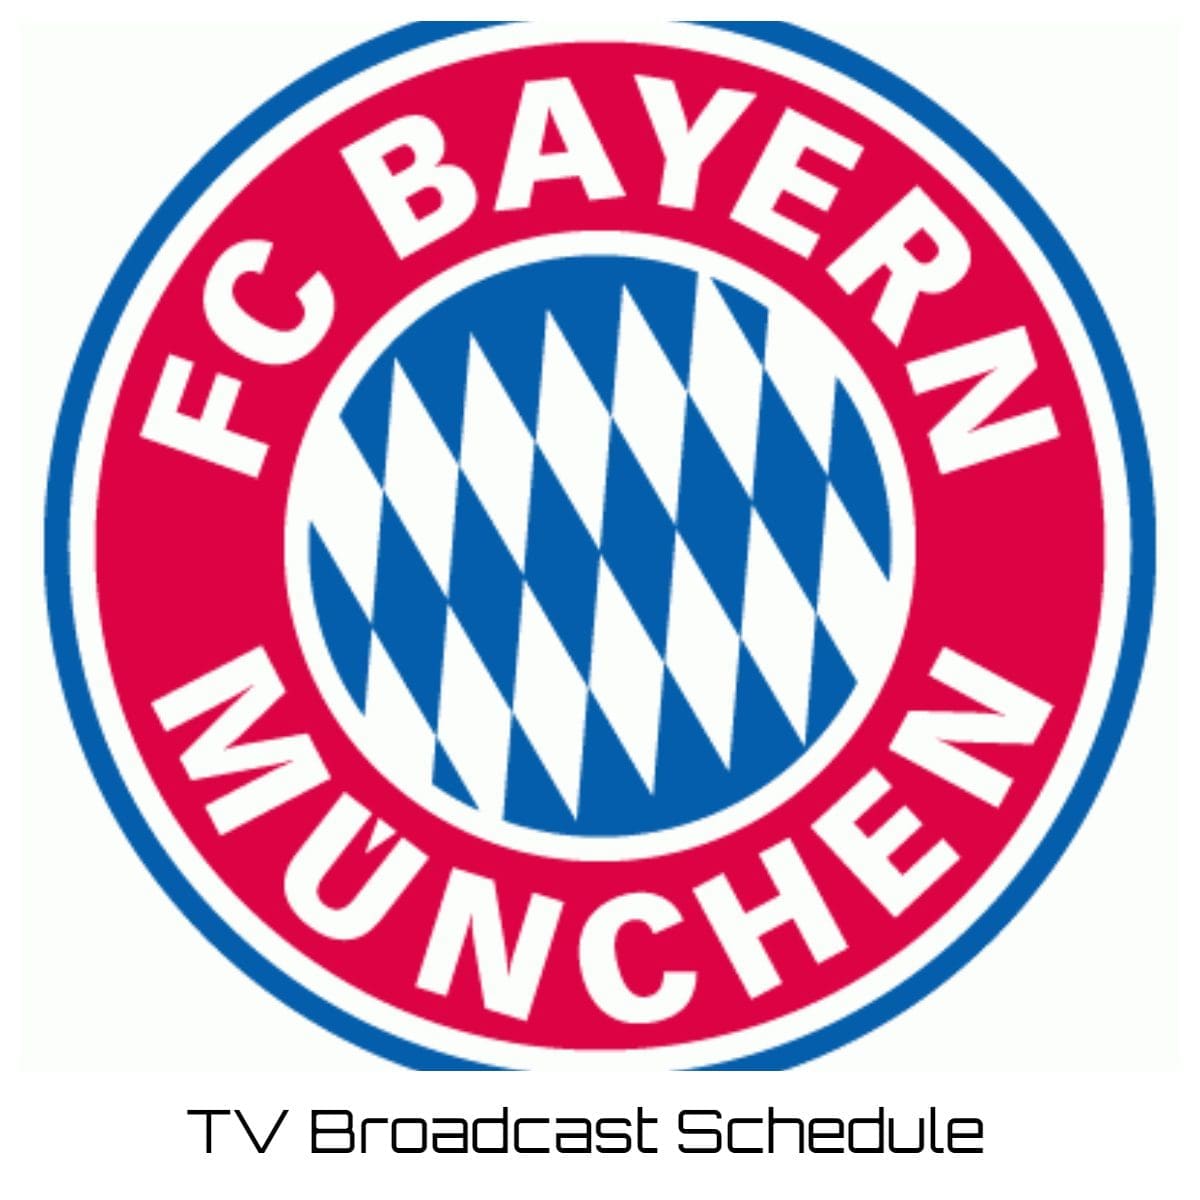 Bayern Munich TV Broadcast Schedule